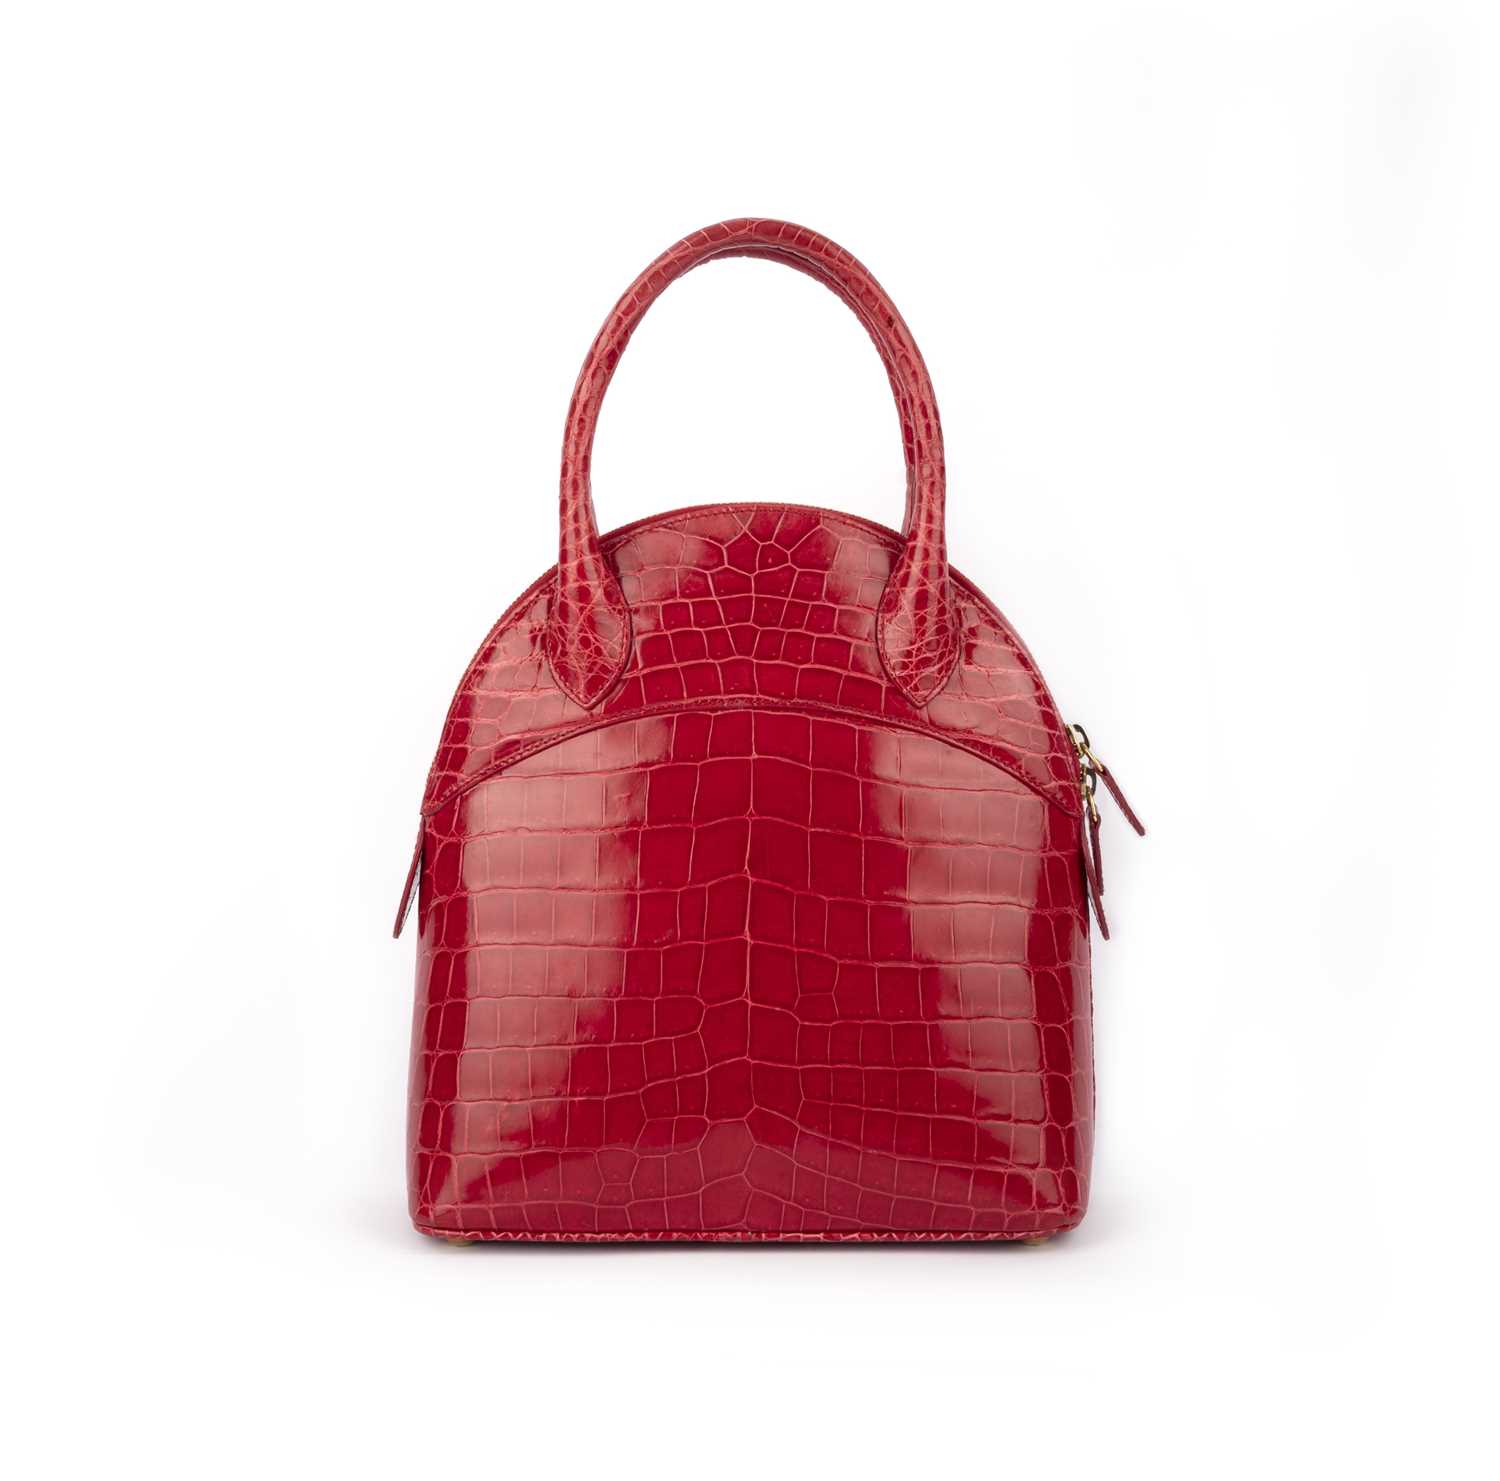 λ Asprey, a raspberry crocodile top handle bag 24cm wide, 26cm high, 42cm strap drop, includes